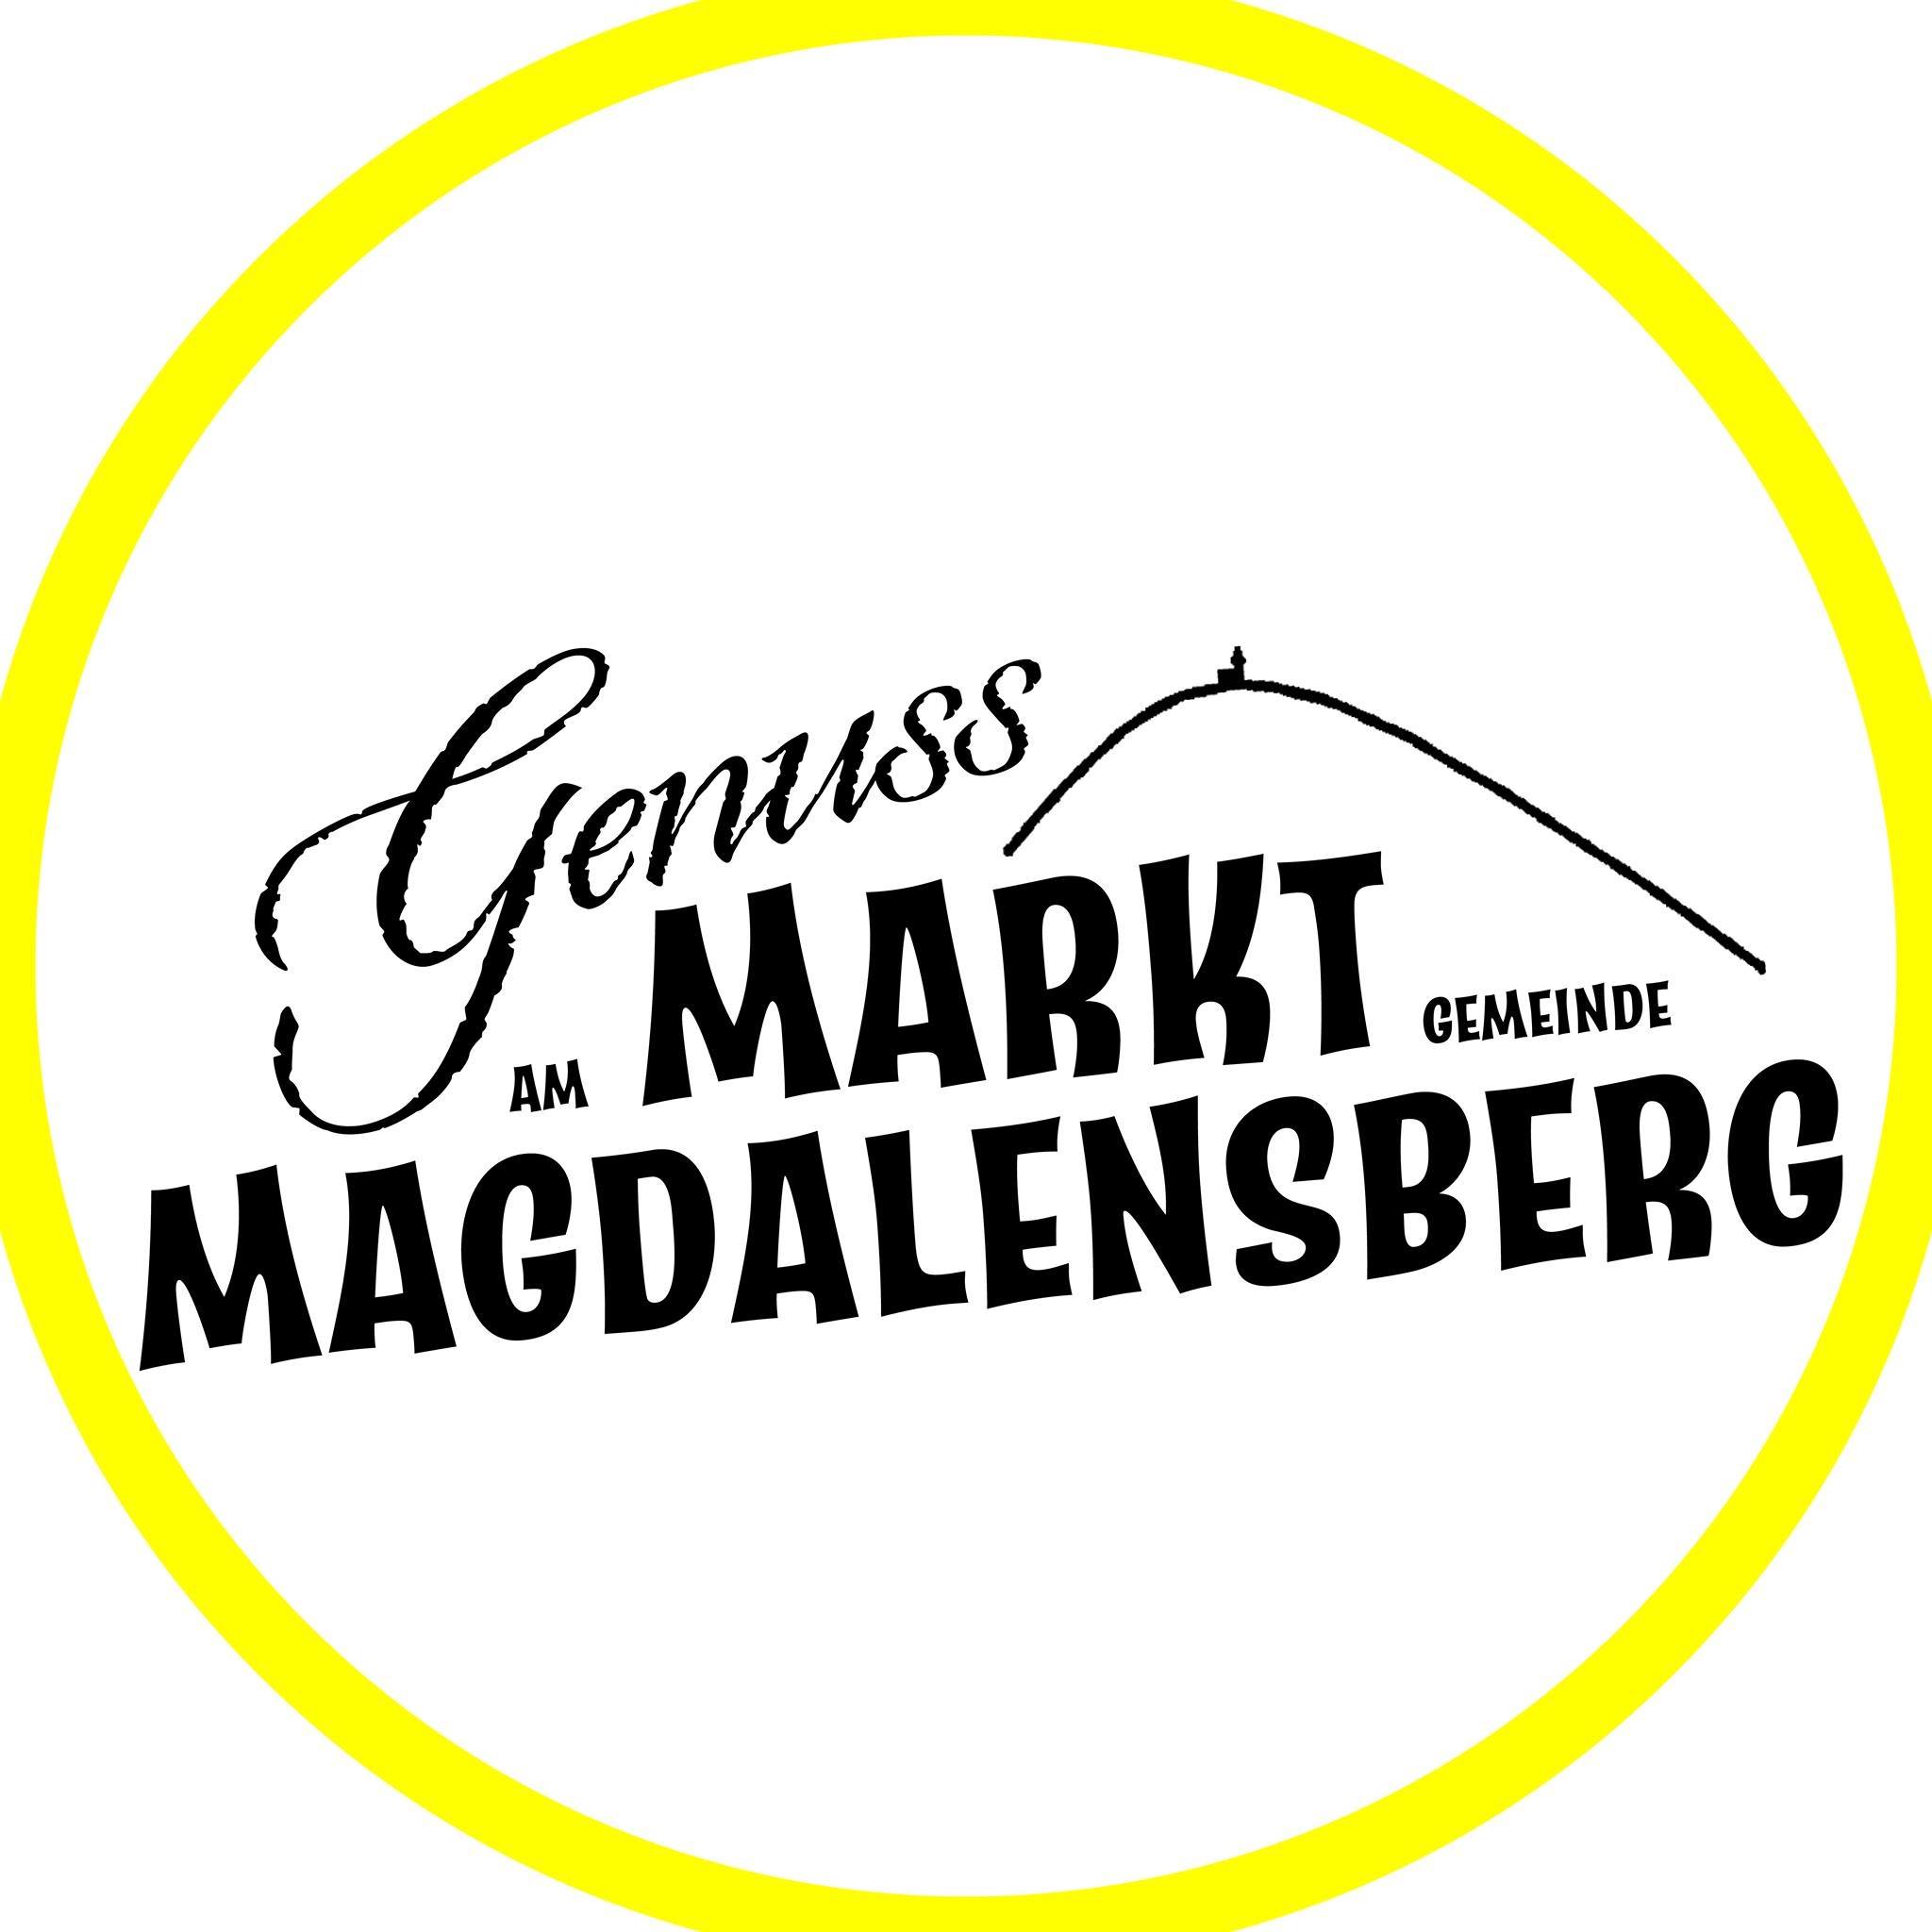 Genussmarkt Gemeinschaft Magdalensberg